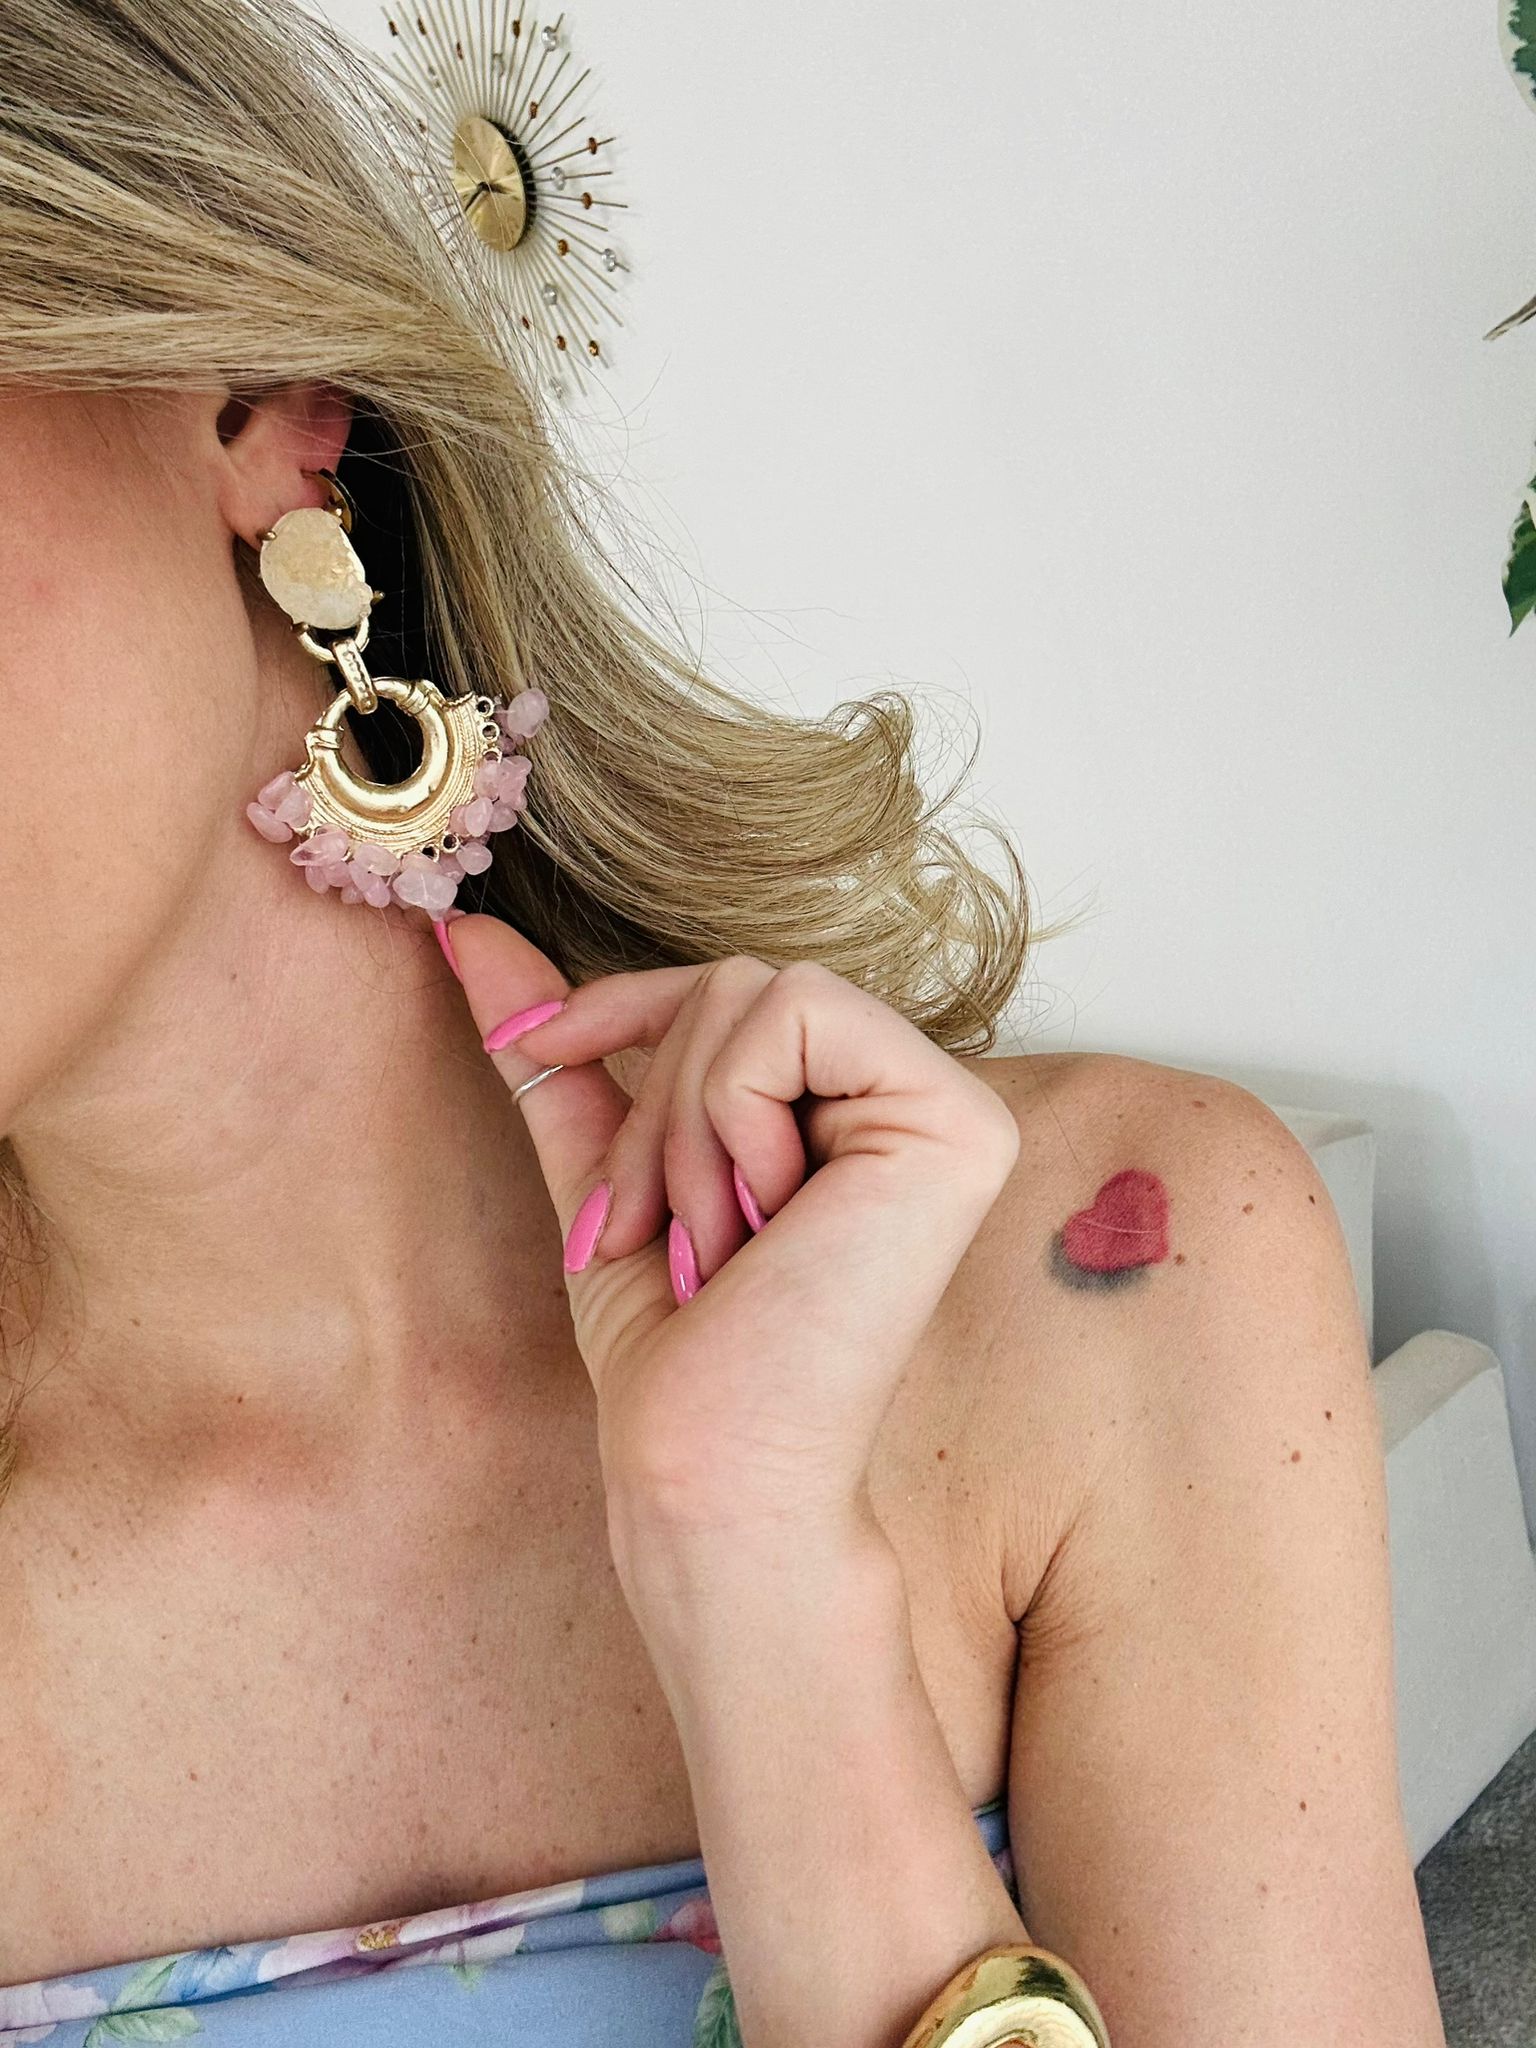 Boucles d'oreilles pendantes avec pierres roses